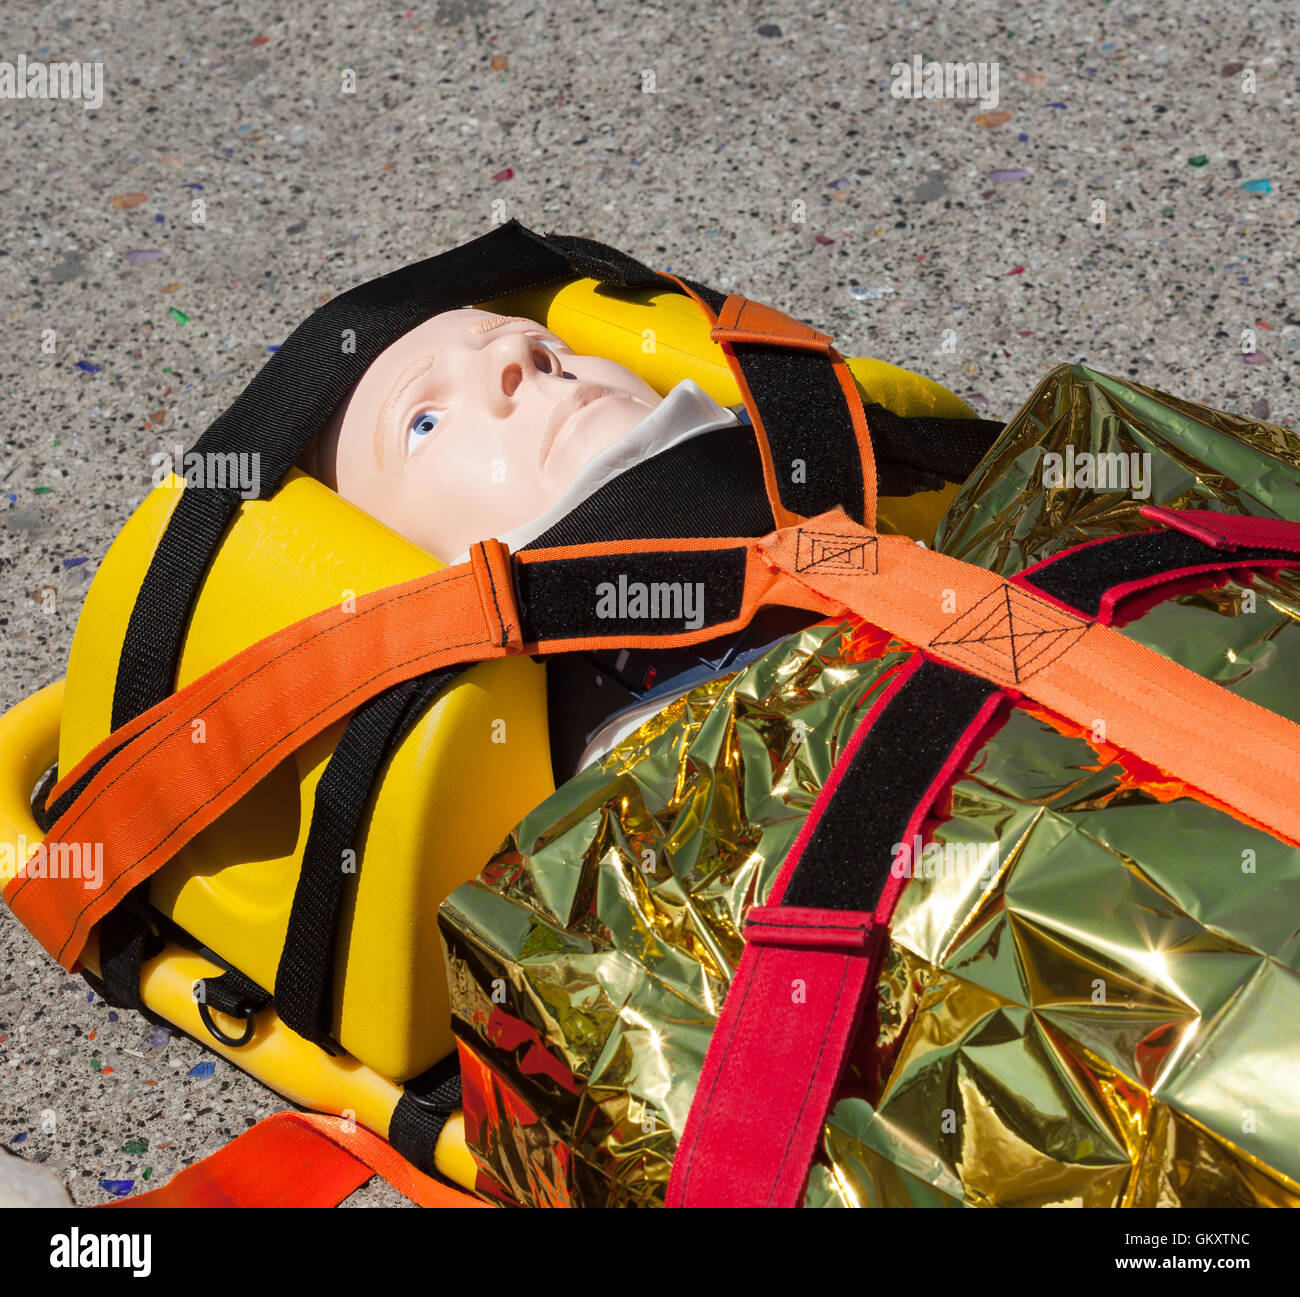 Dummy auf einer Bahre für Transport oder Air Rescue immobilisiert. Stockfoto